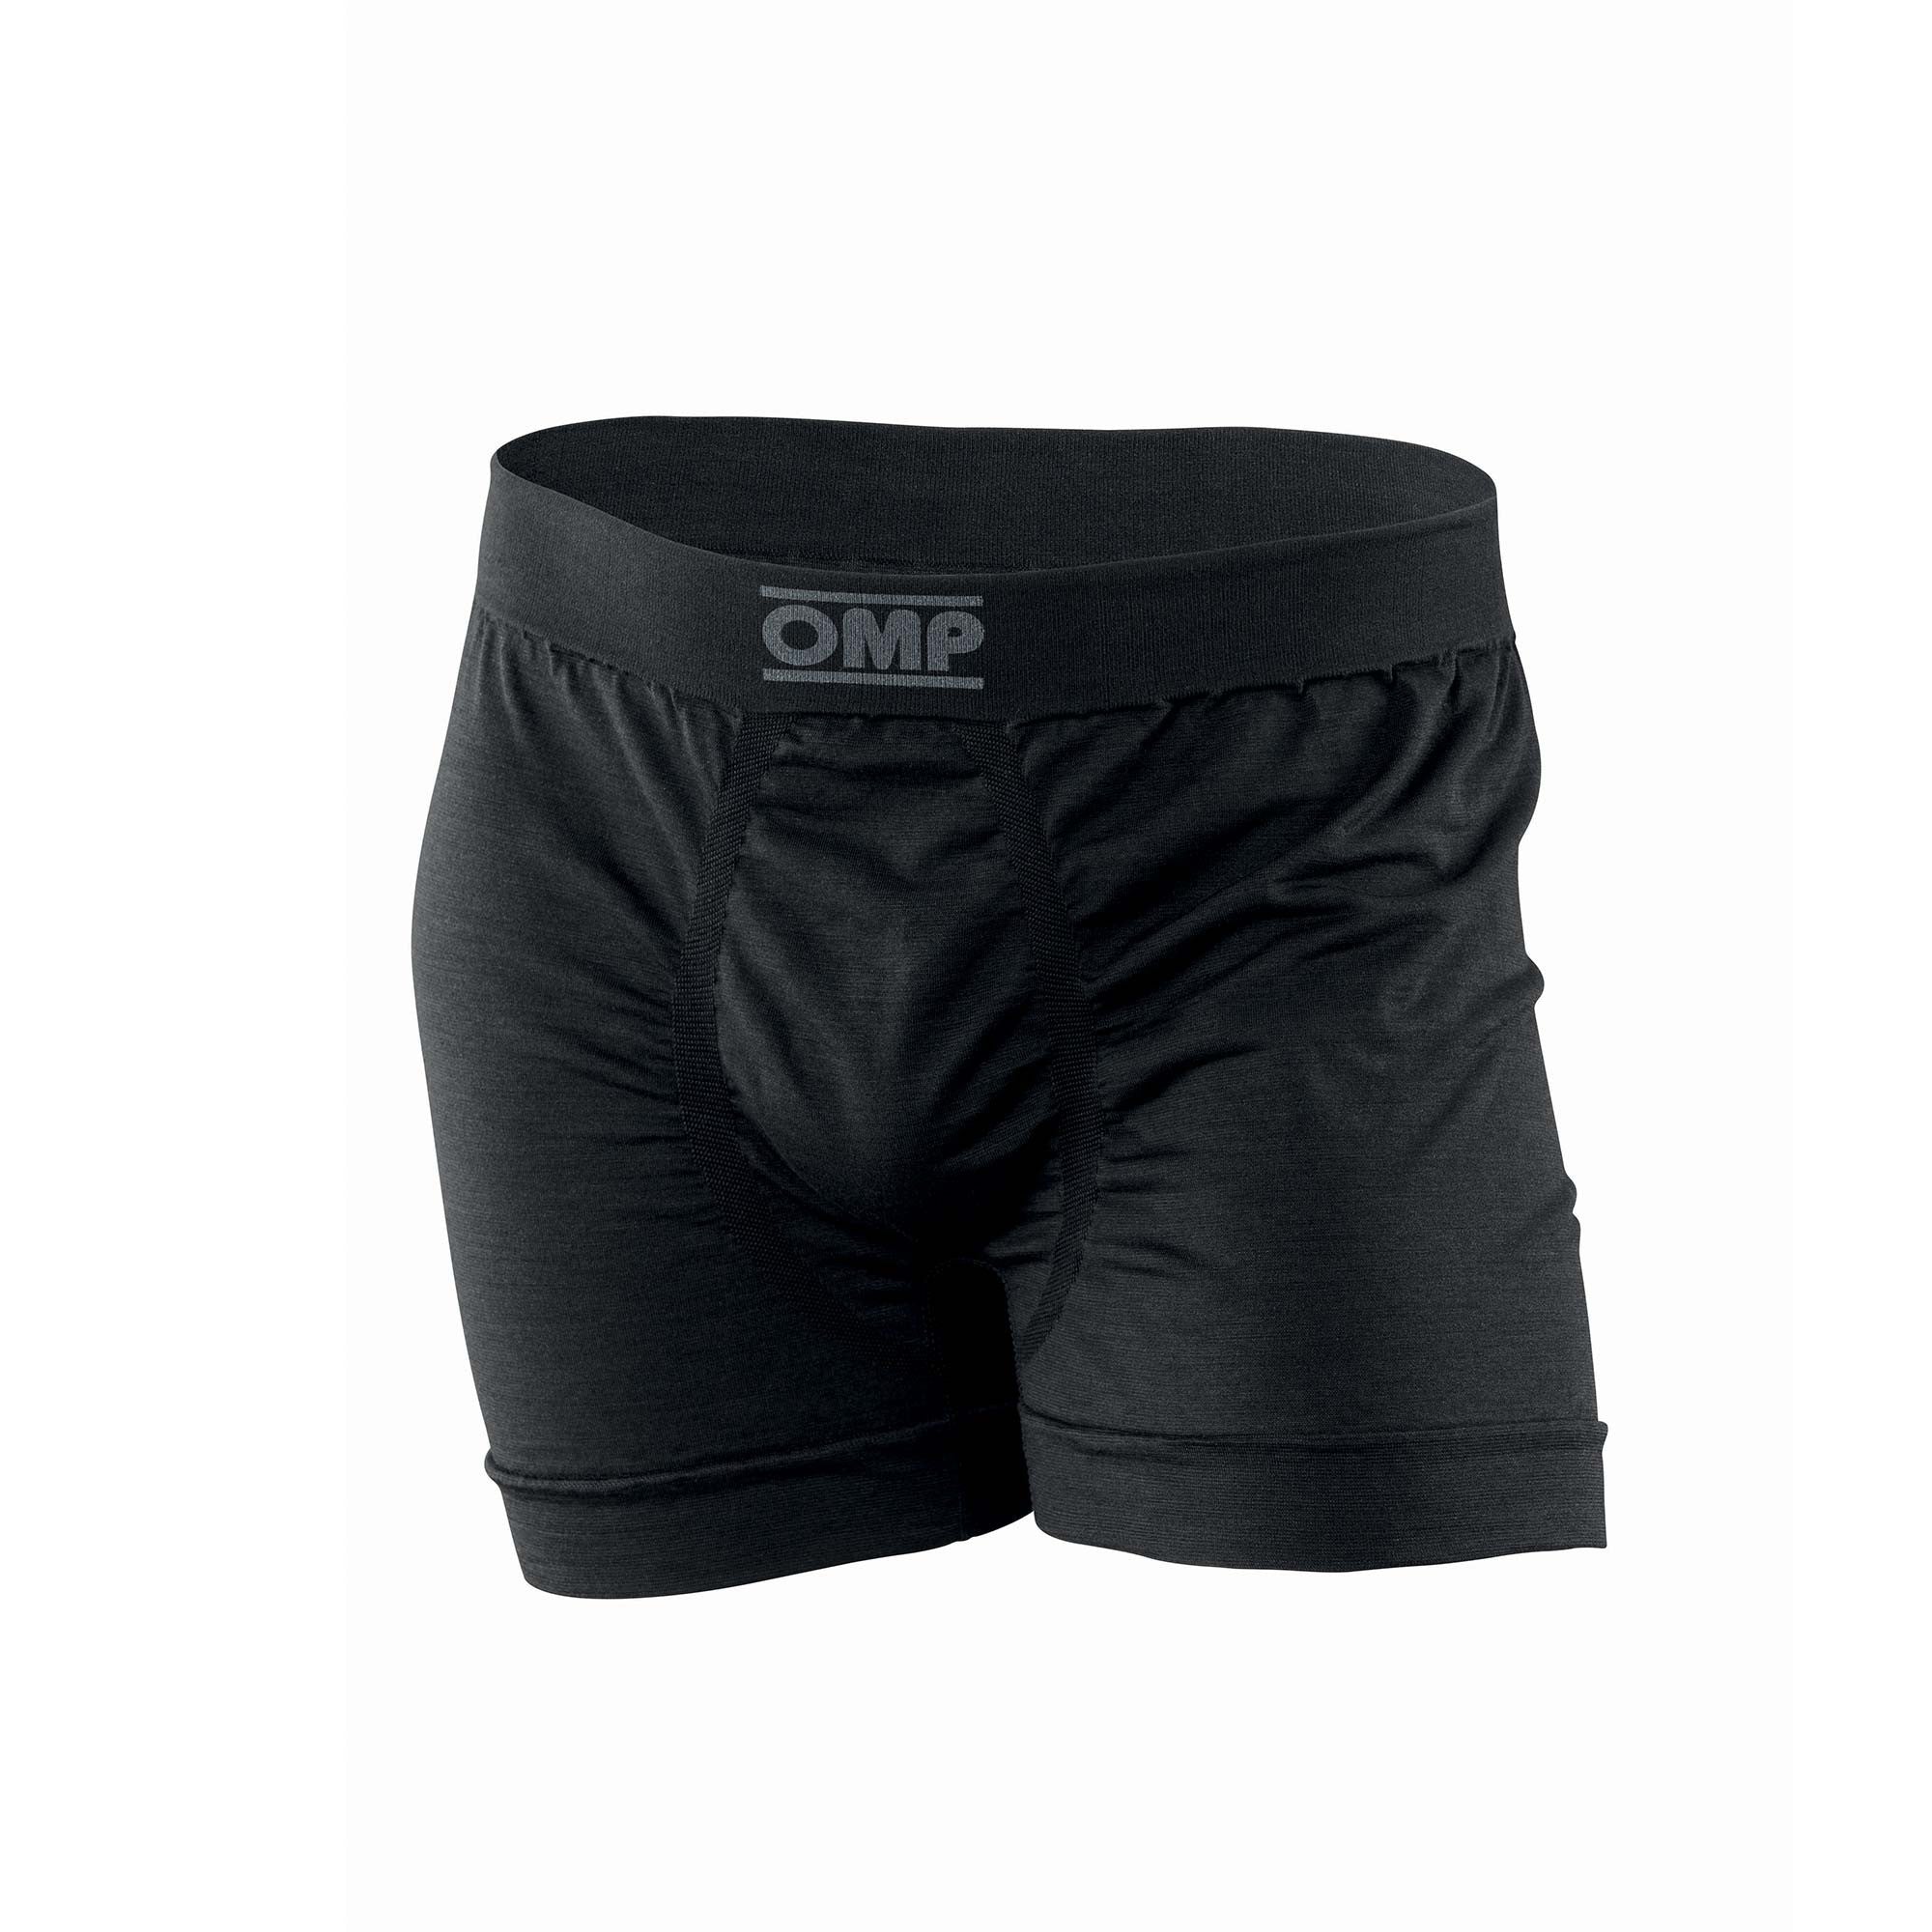 OMP IE0-0785-A01-071-XXL Boxer underwear, FIA 8856-2018, black, size XXL Photo-0 